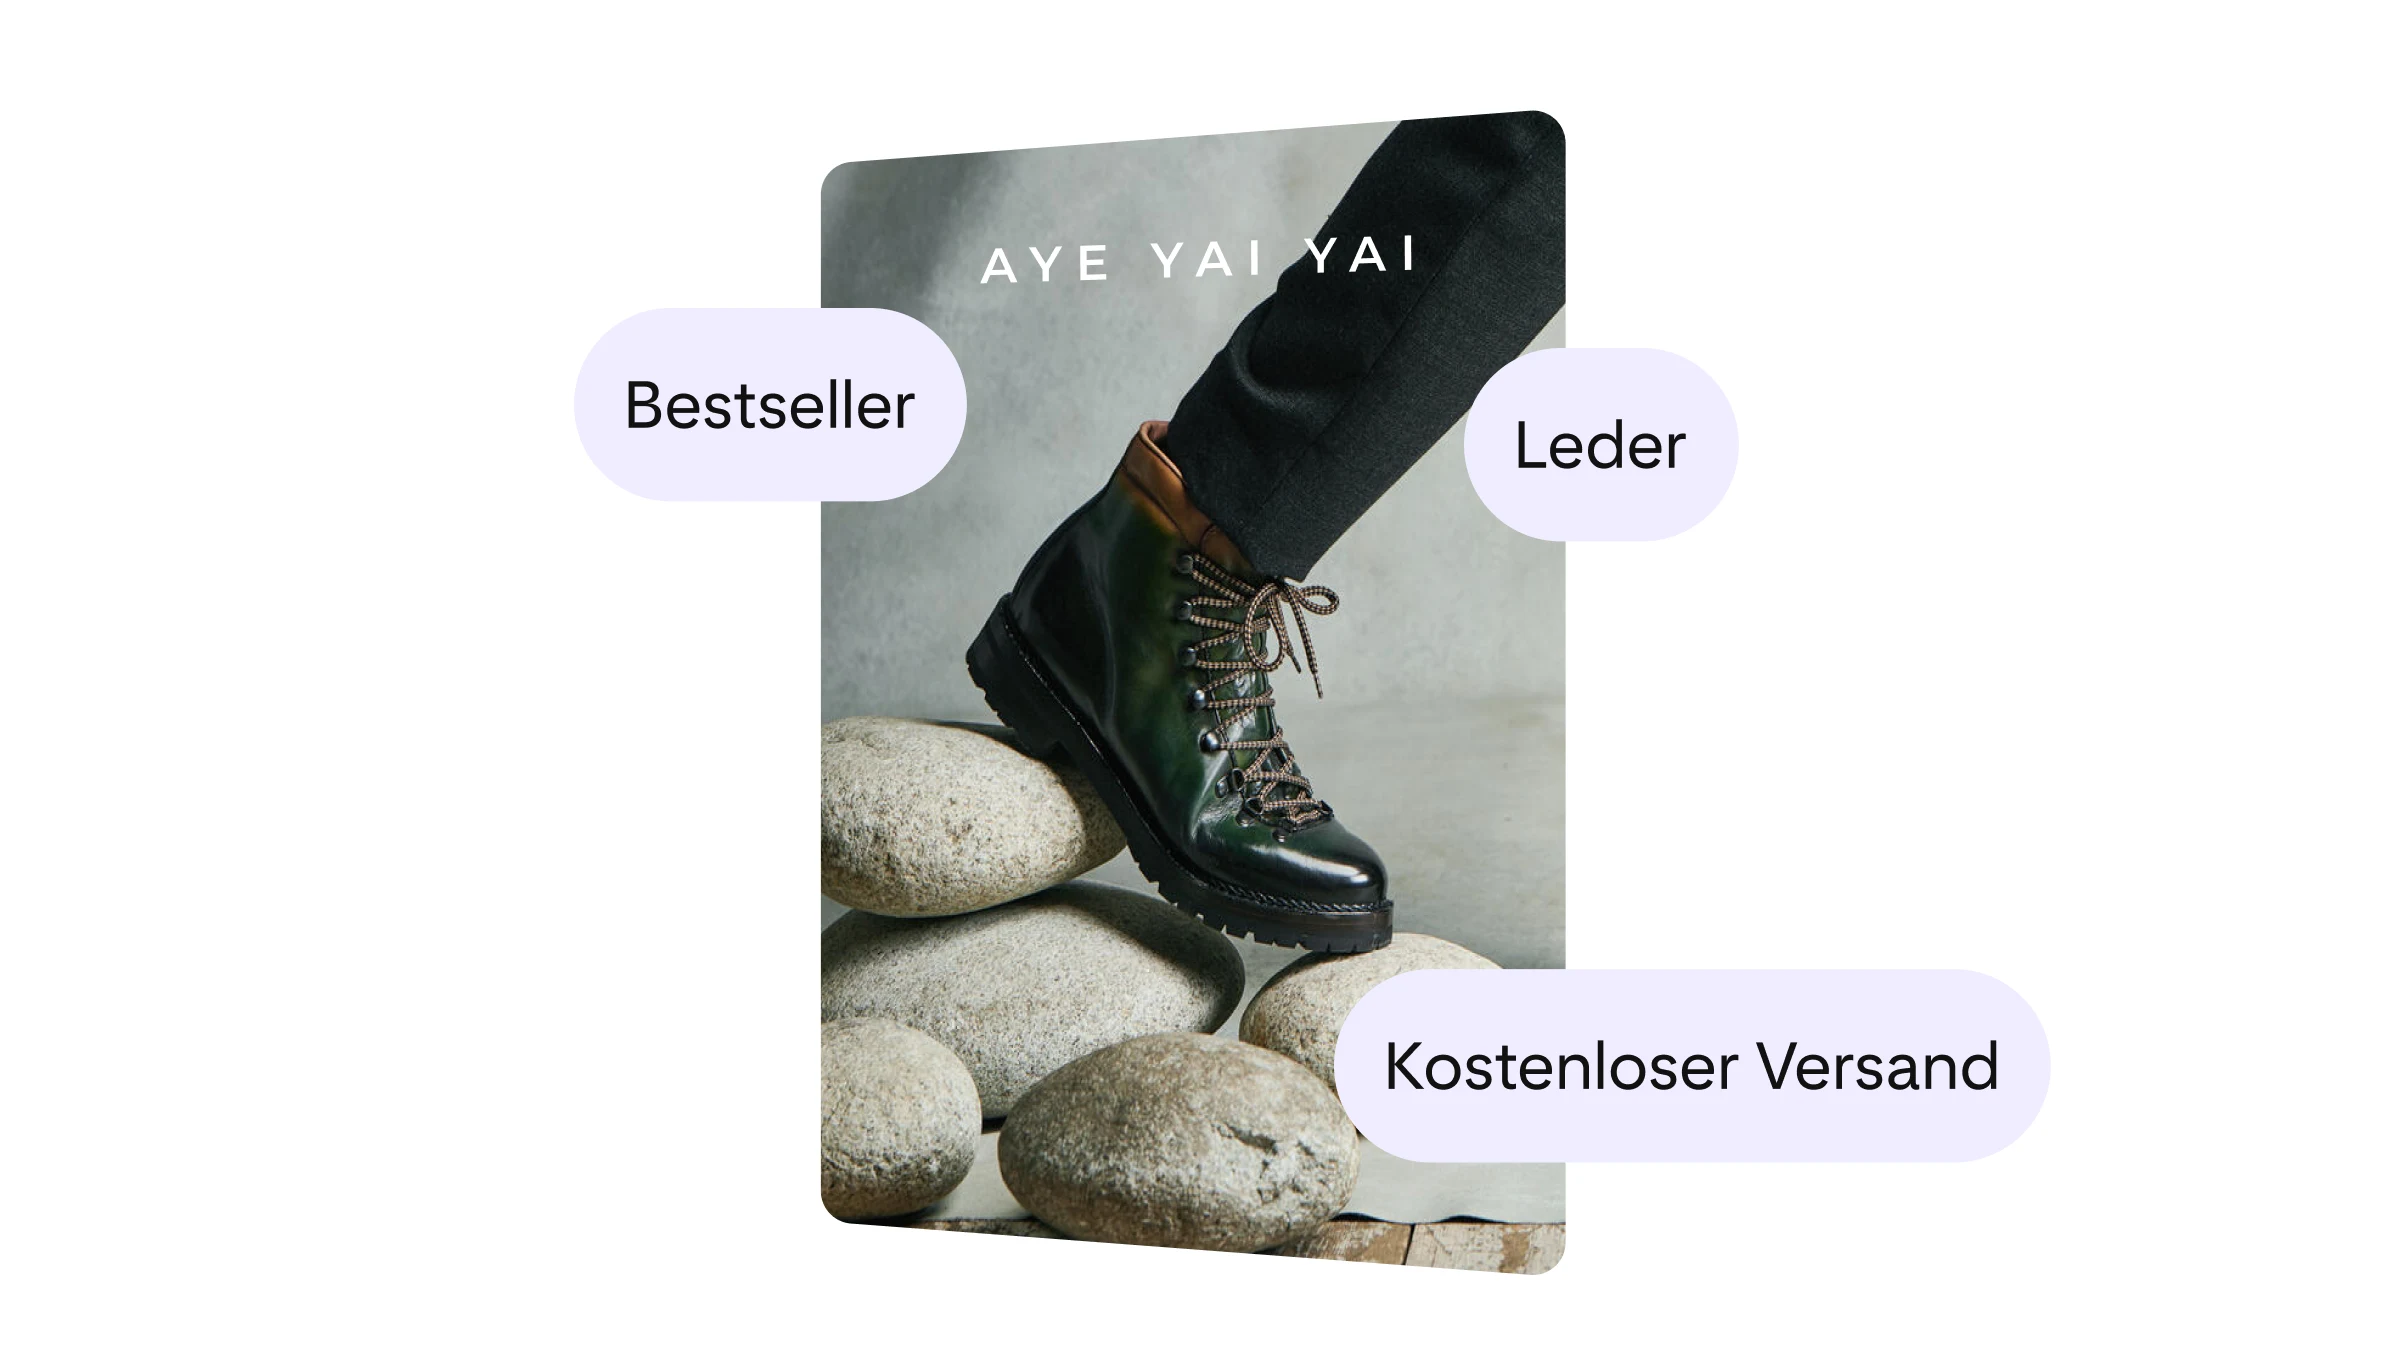 AYE YAI YAI Bewerben Sie ihre Stiefel, mit dem Text, der betont, dass es sich um Leder handelt, Bestseller und versandkostenfrei.